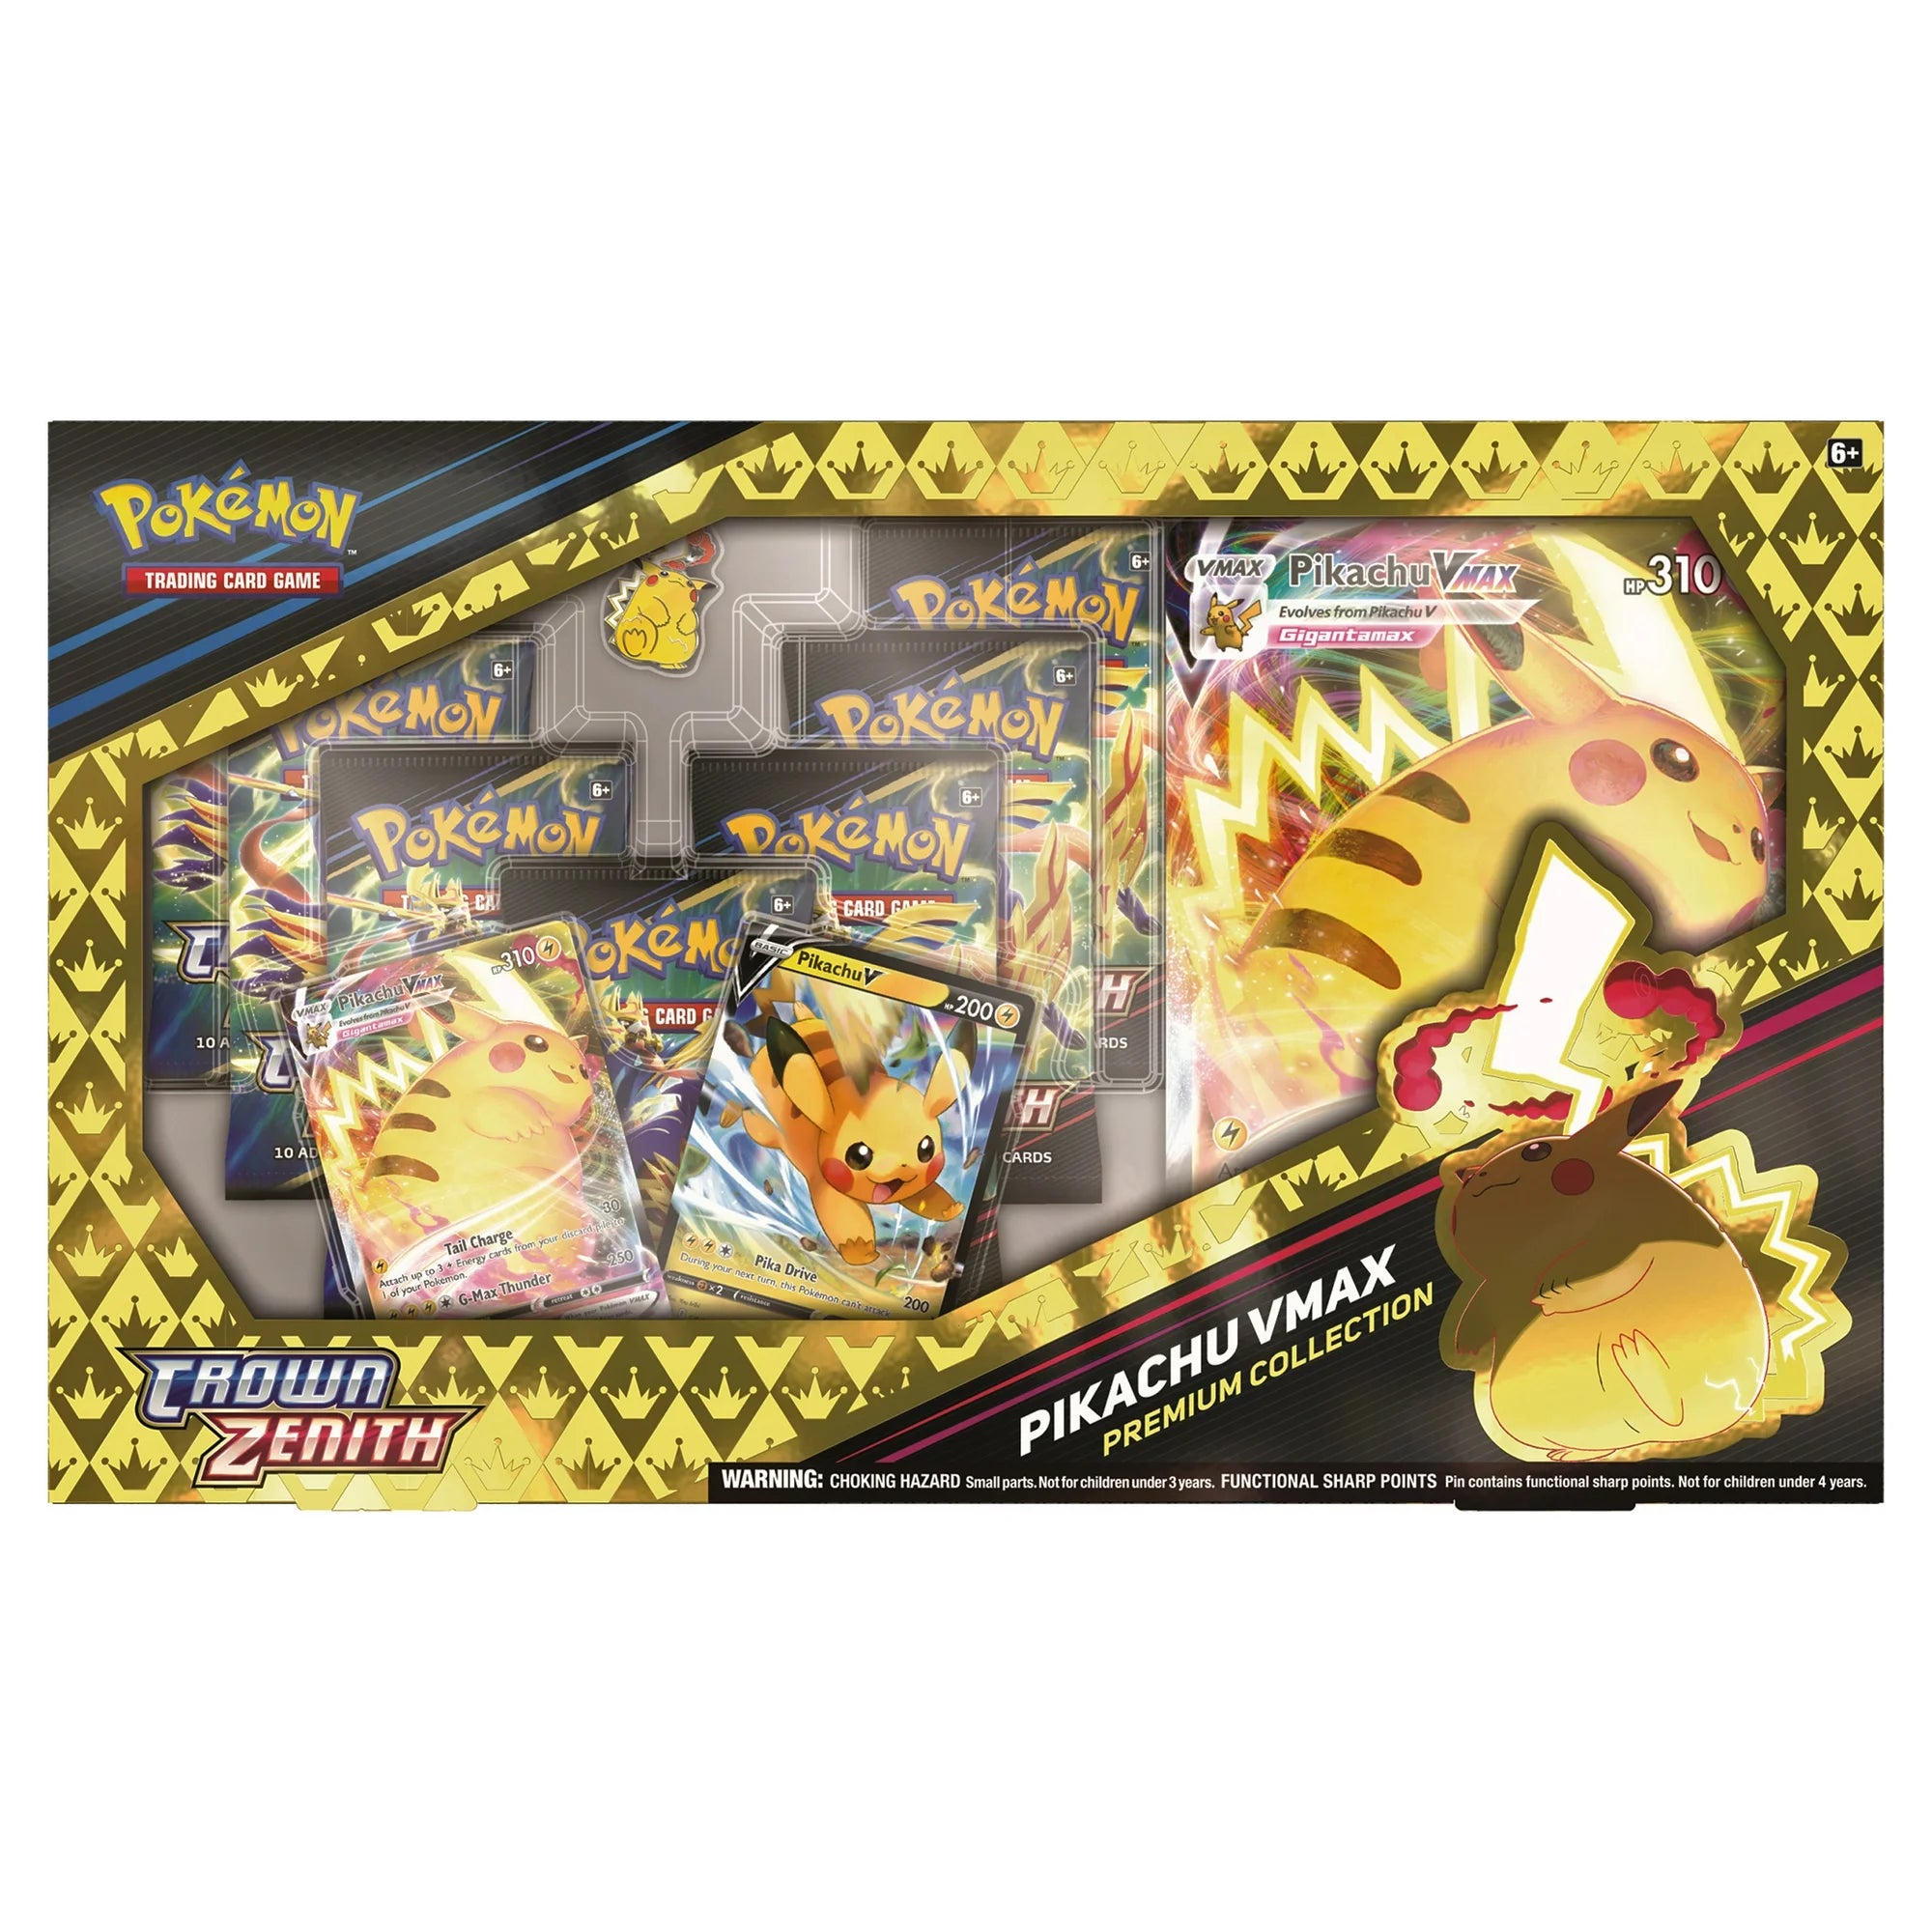 Pokemon Pikachu VMAX Premium Collection